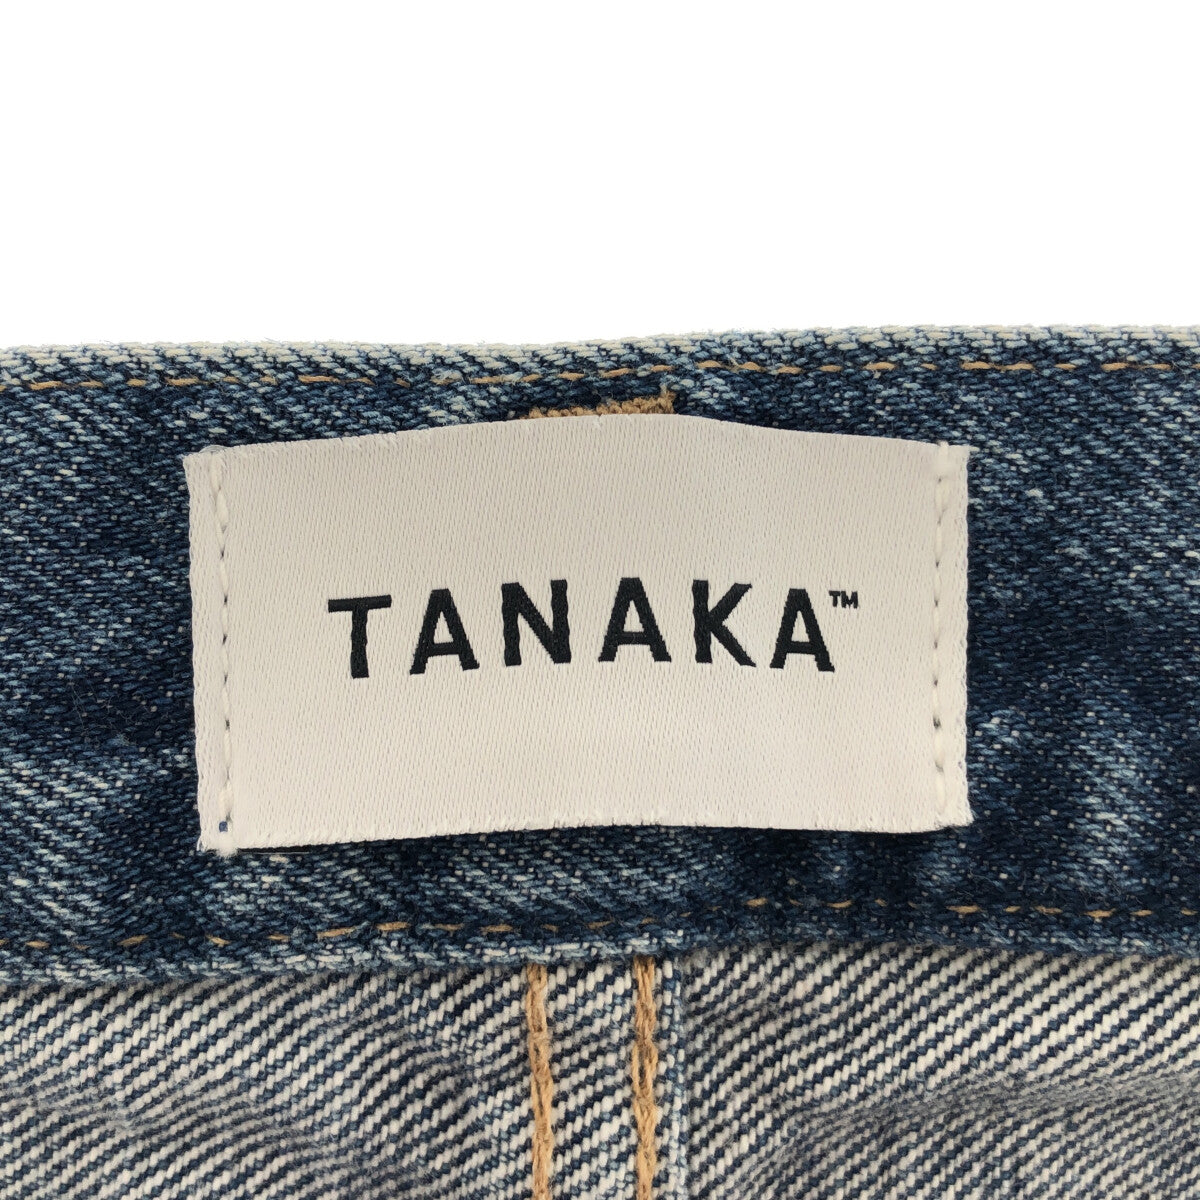 TANAKA / タナカ | THE BOOTS JEAN TROUSERS / ブーツカット デニムパンツ | 32 | インディゴ | メンズ